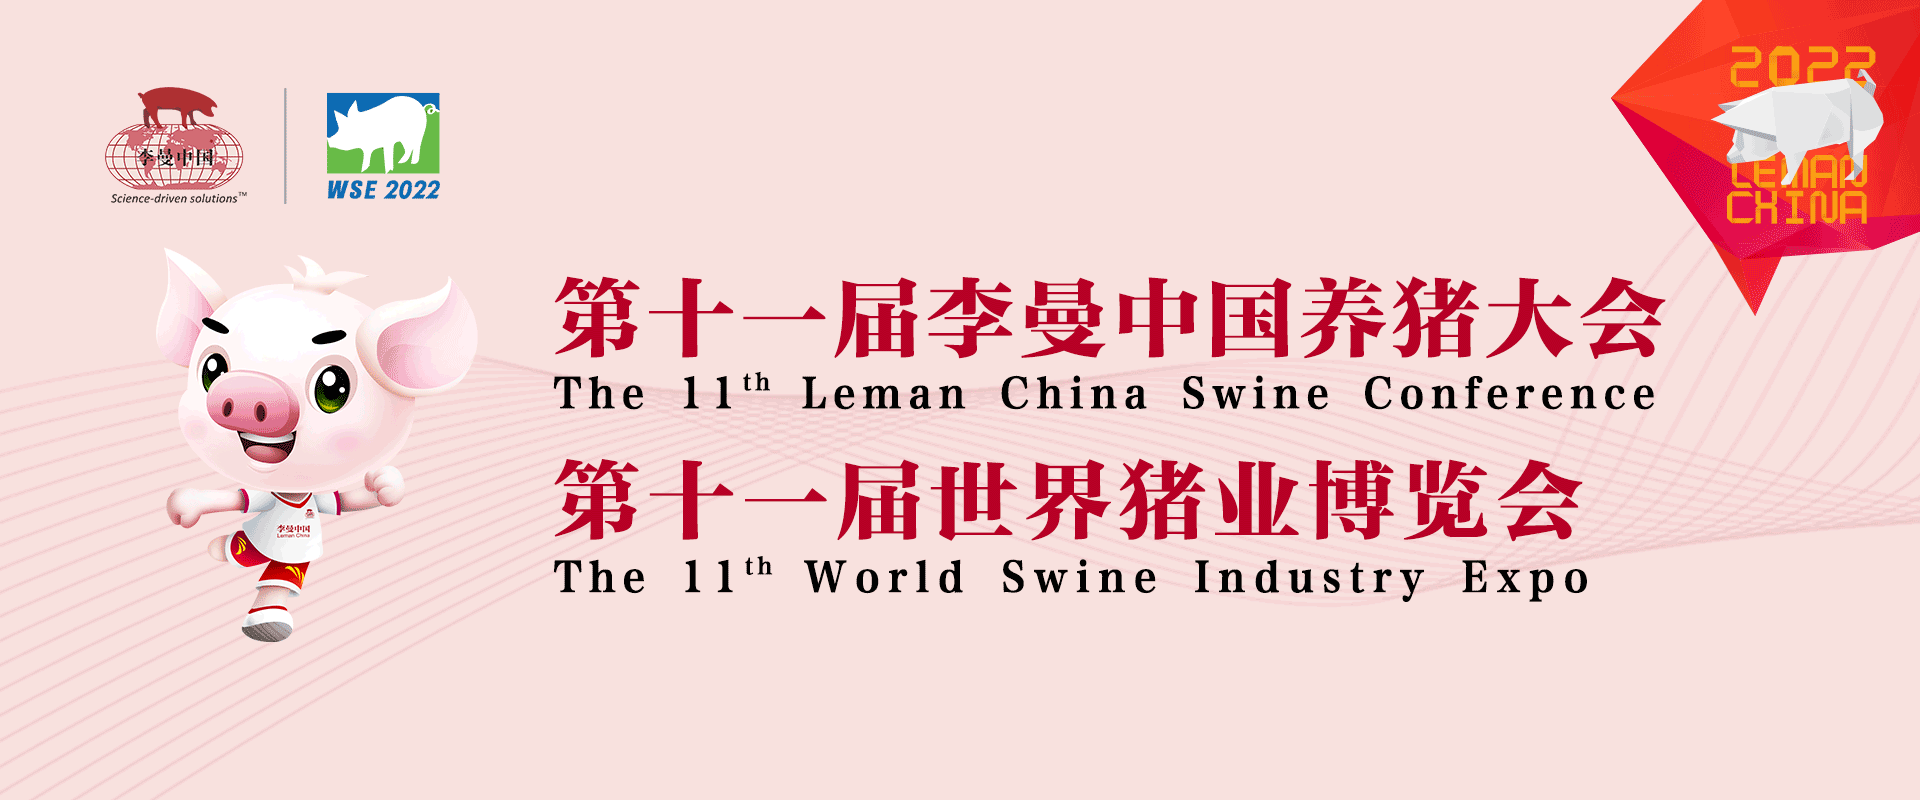 第十一届李曼养猪大会暨2022世界猪业博览会